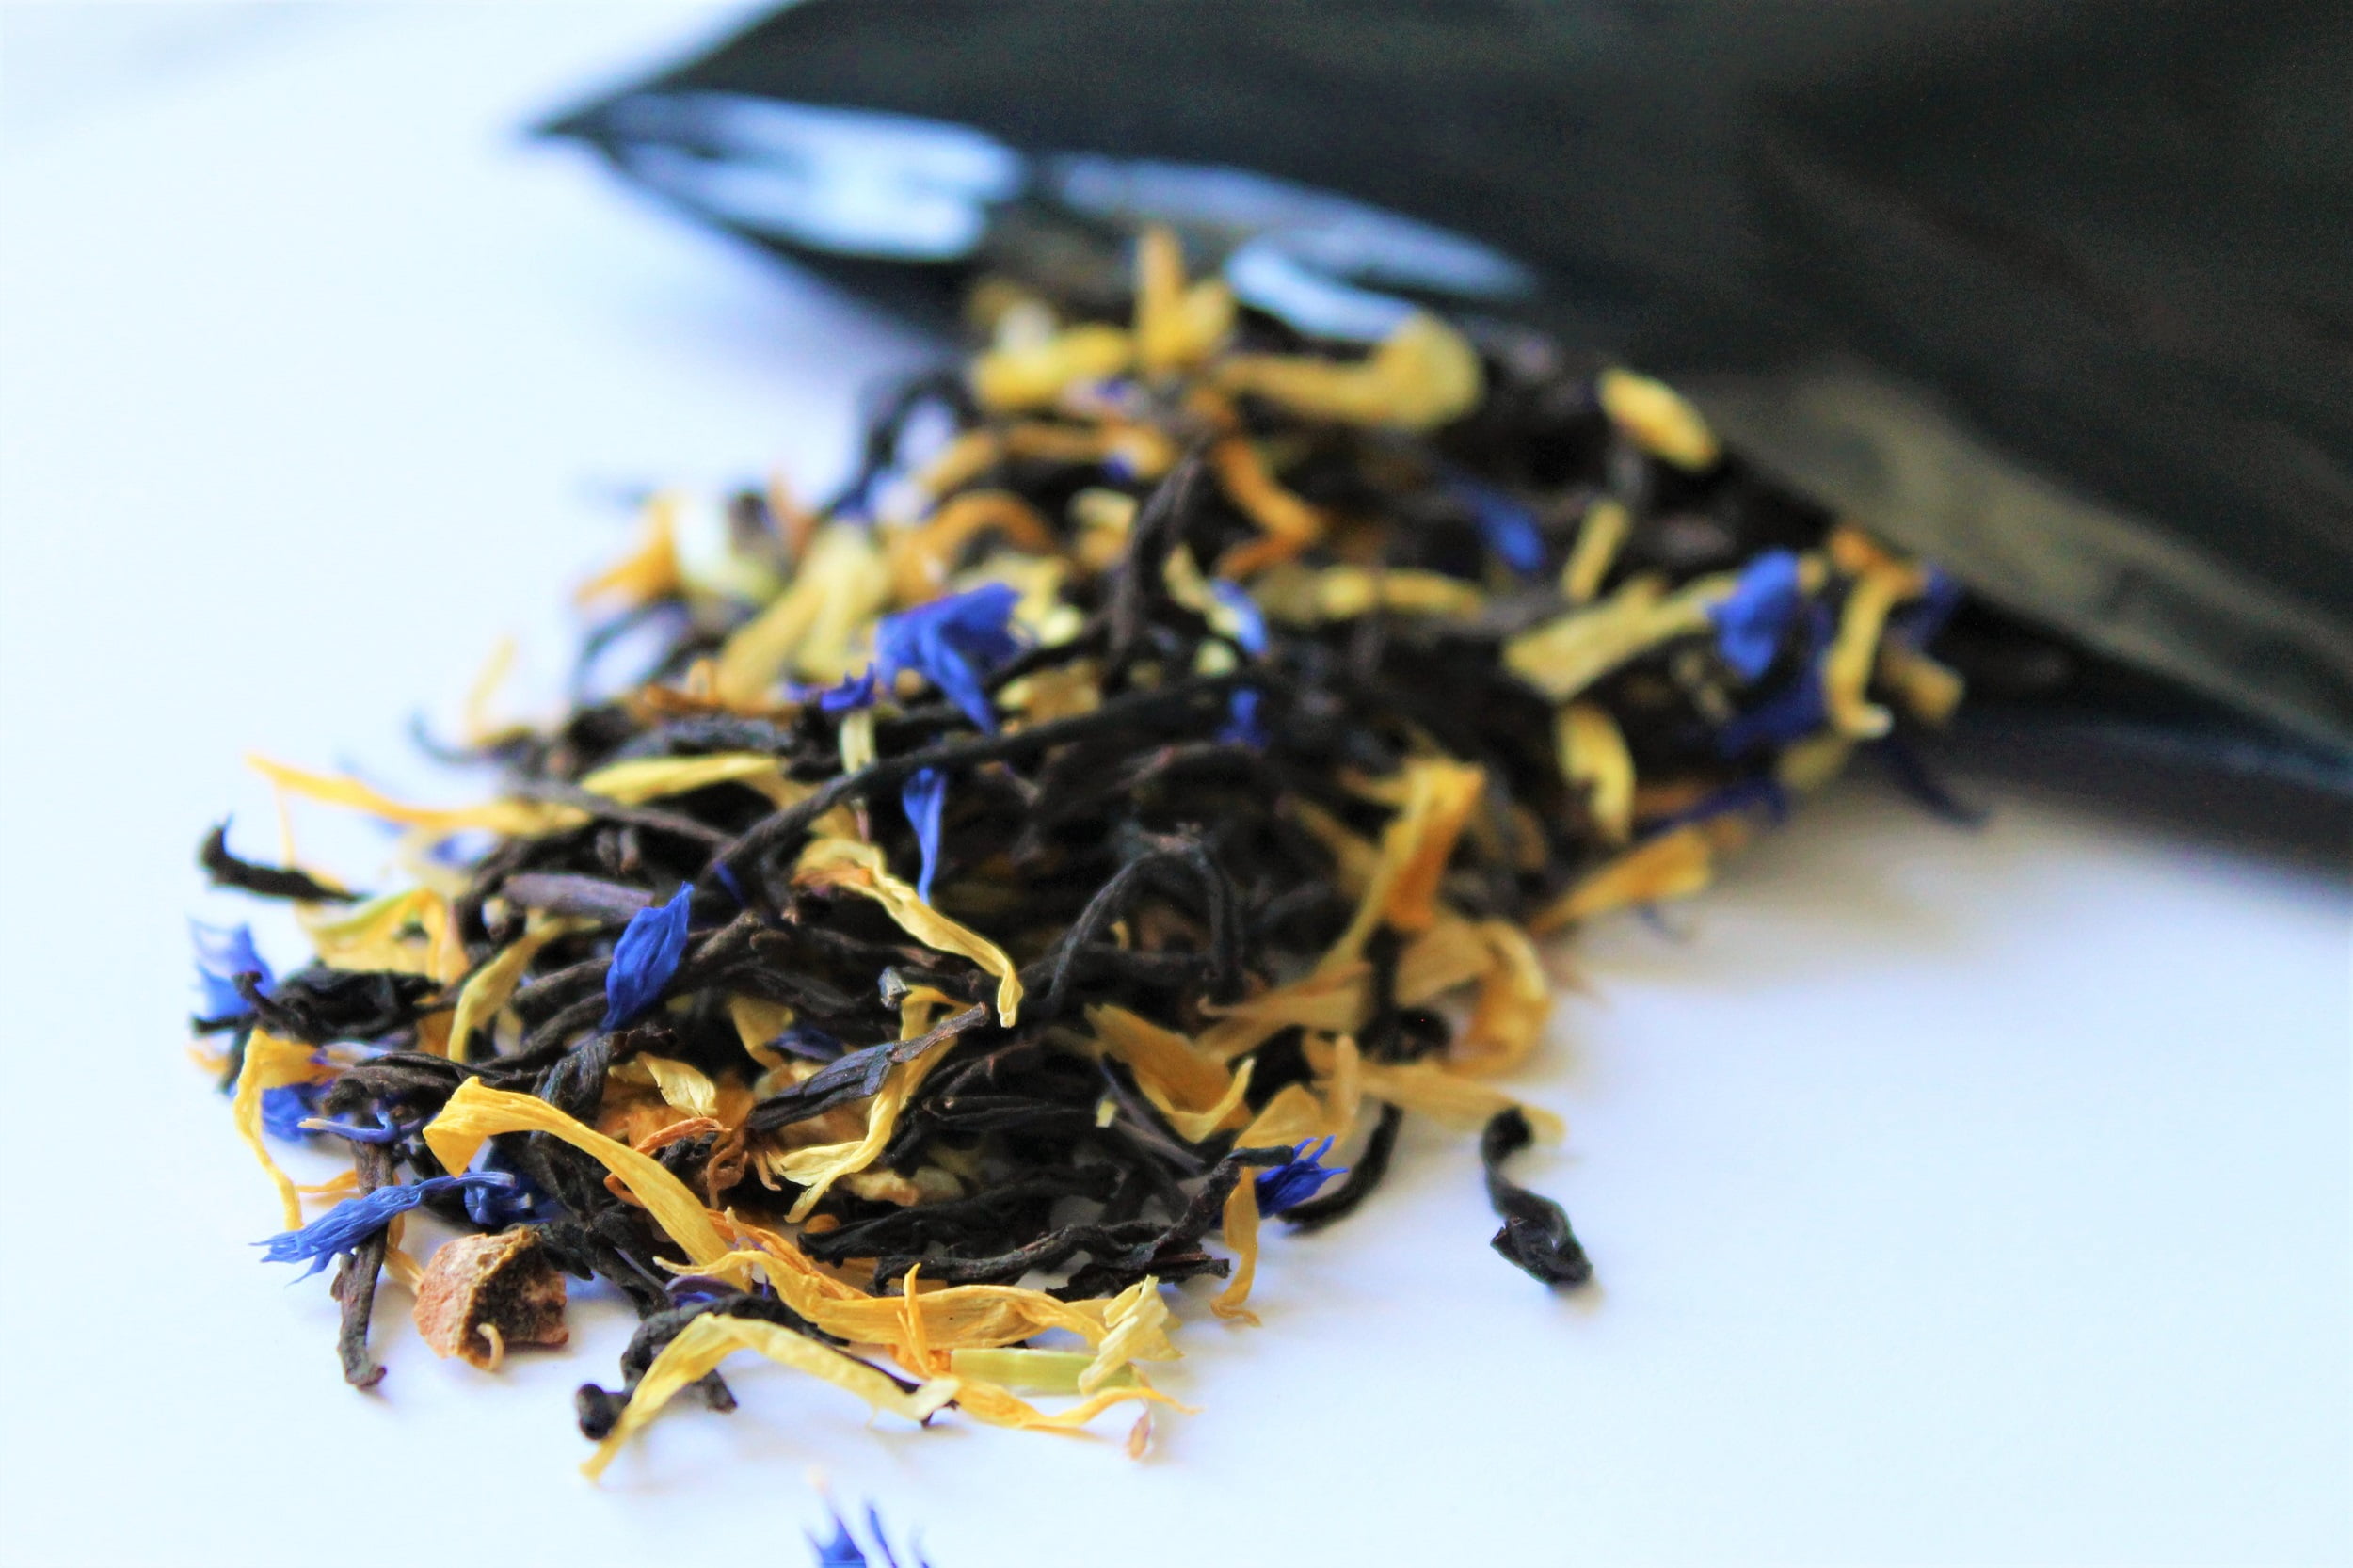 Earl Grey Tea, Luxury Loose Leaf Tea